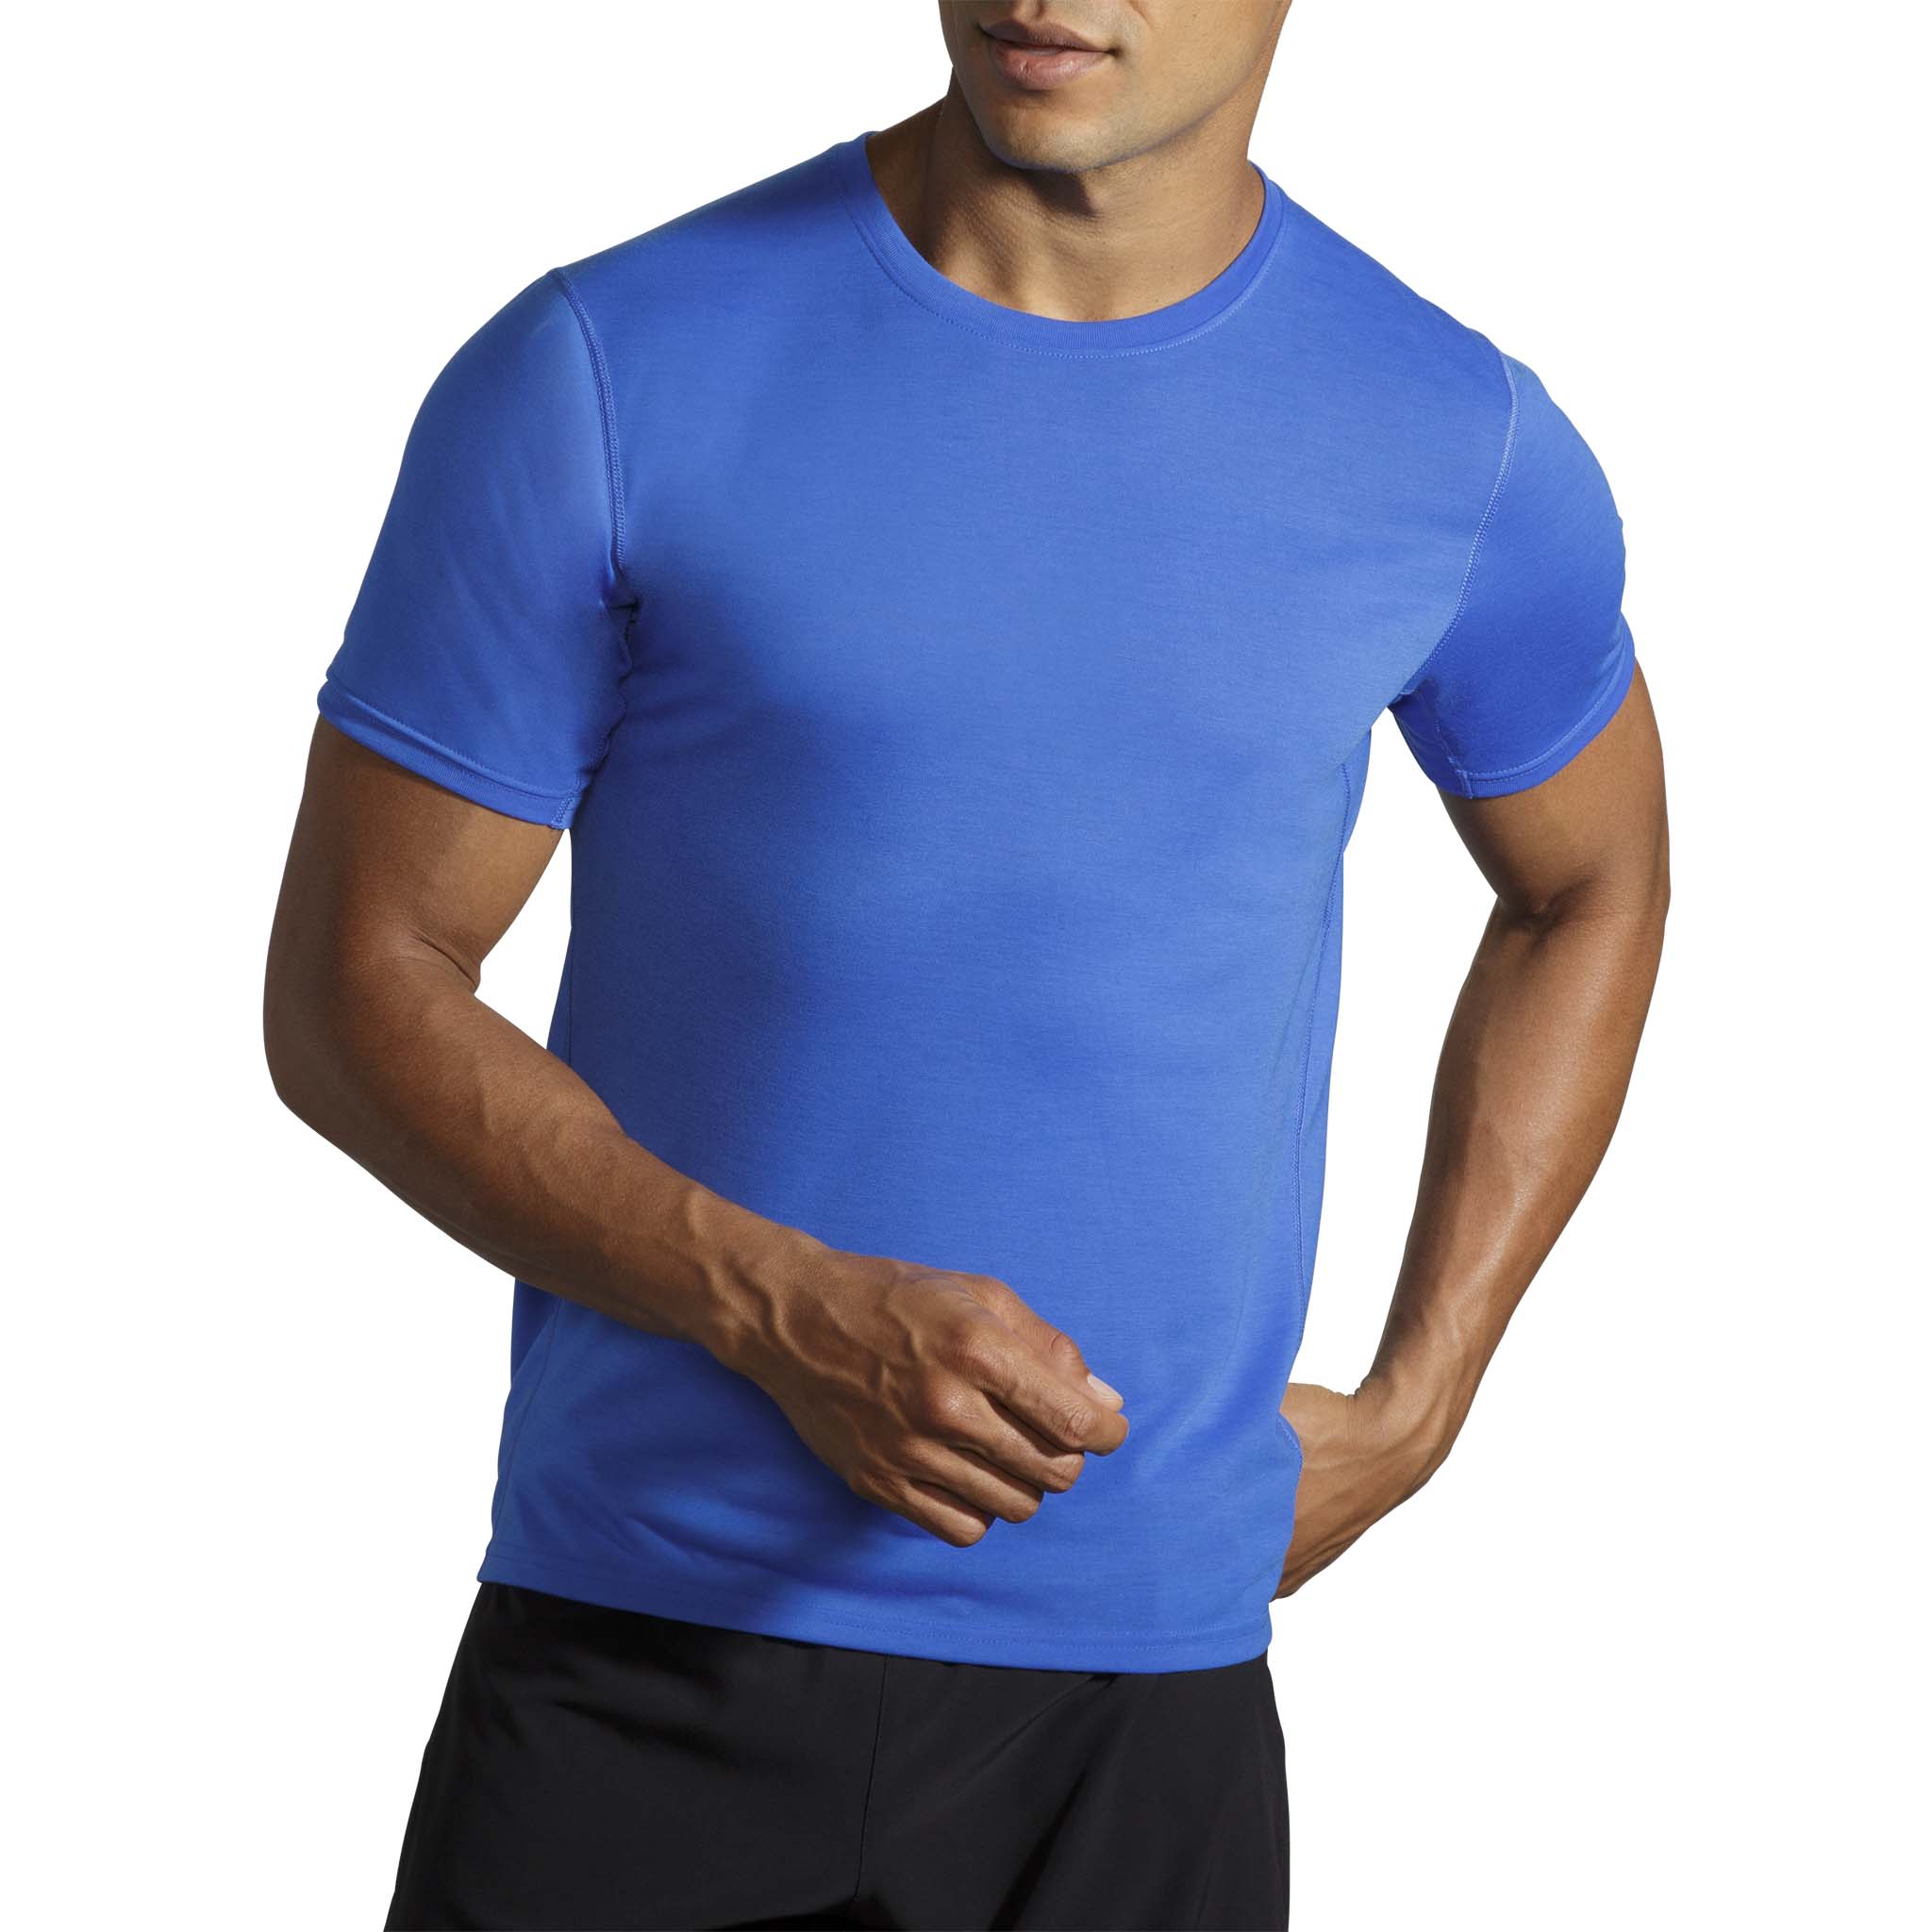 Brooks Momentum Thermal running leggings for men - Soccer Sport Fitness